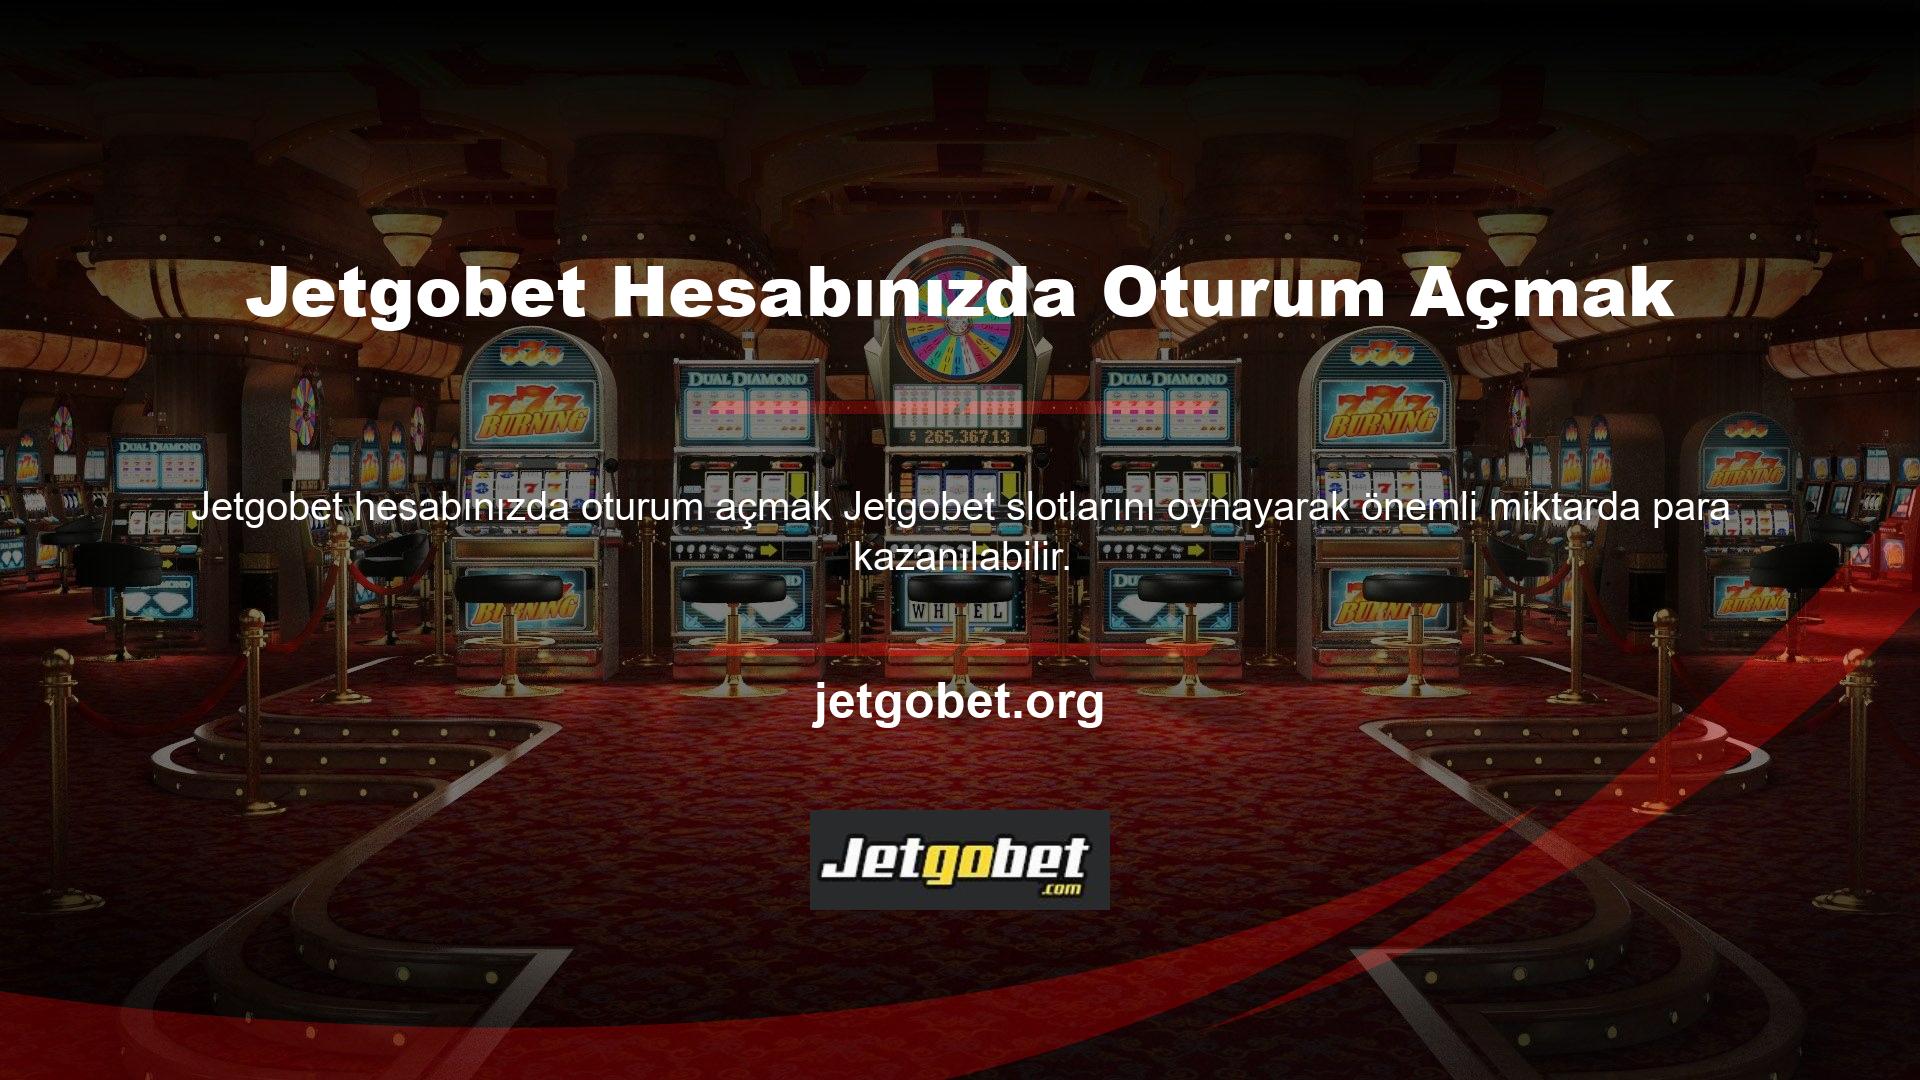 Jetgobet, oyun dünyasında imrenilen slotları zaten güvence altına almış riskli bir bahistir